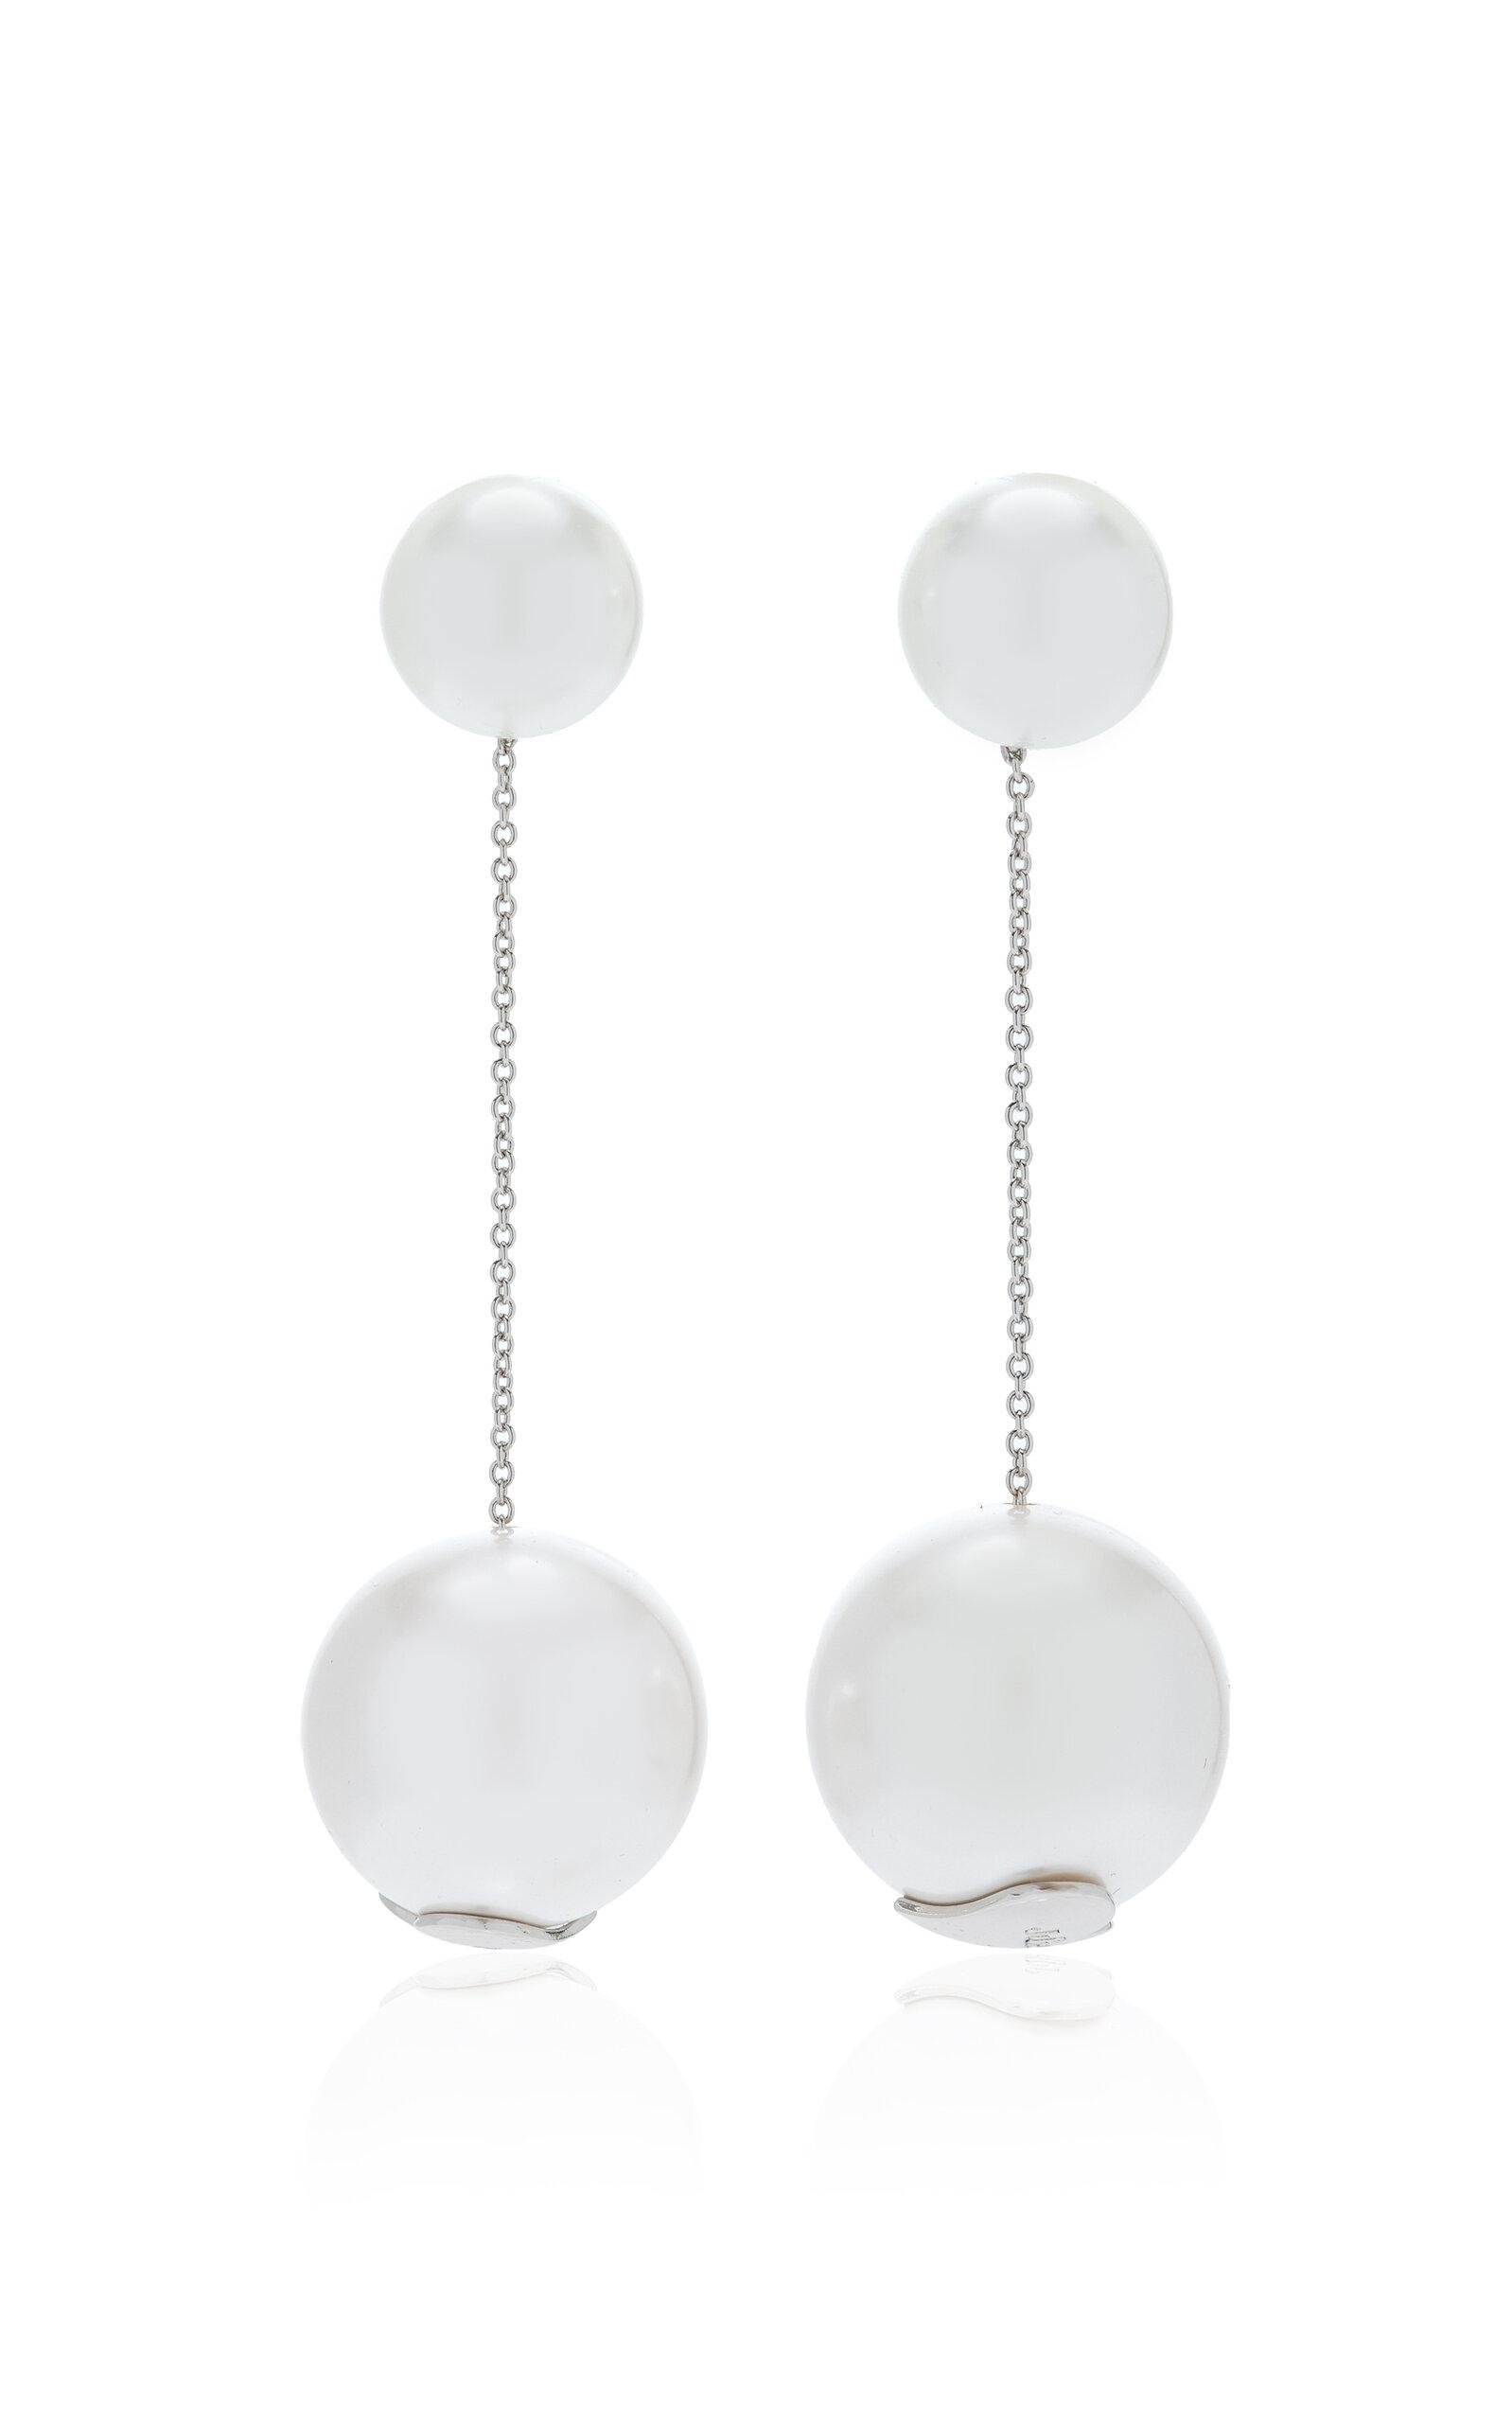 Julietta - Pearl Earrings - White - OS - Moda Operandi - Gifts For Her by JULIETTA